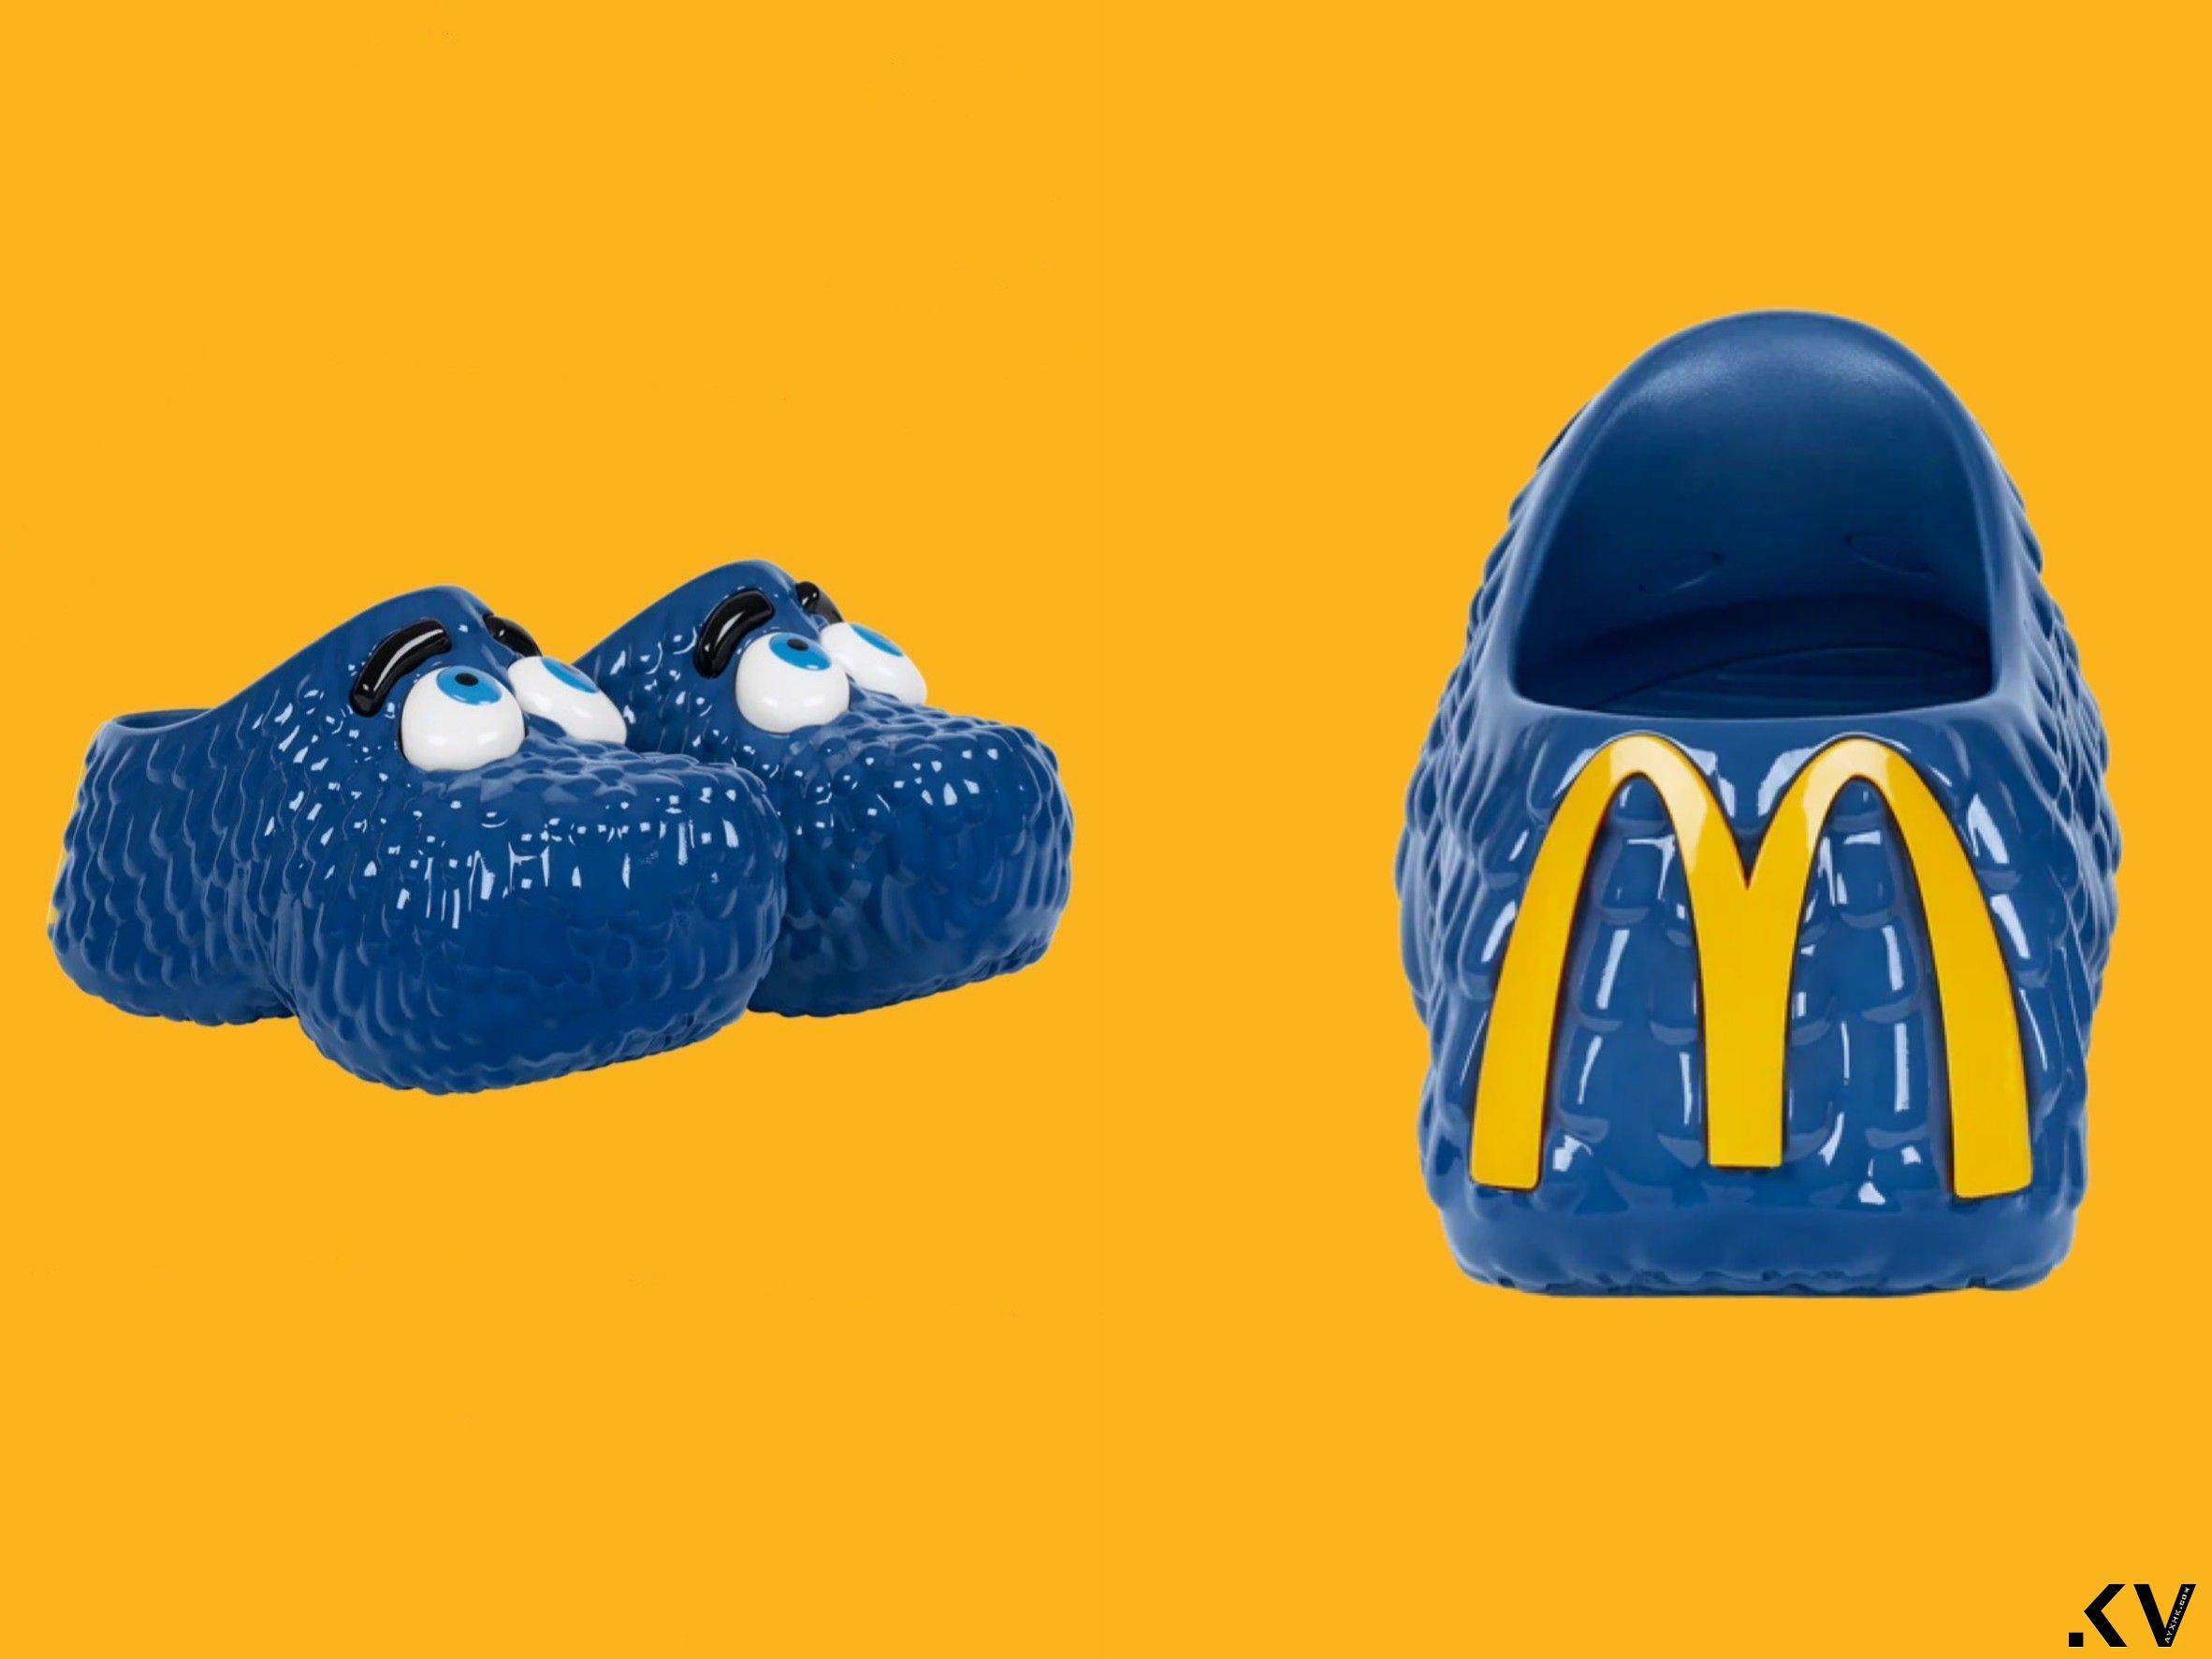 麦当劳联名鞋“Fry Guy”有趣味大眼睛　Nike限量《旺卡》Dunk超想要 最新资讯 图1张